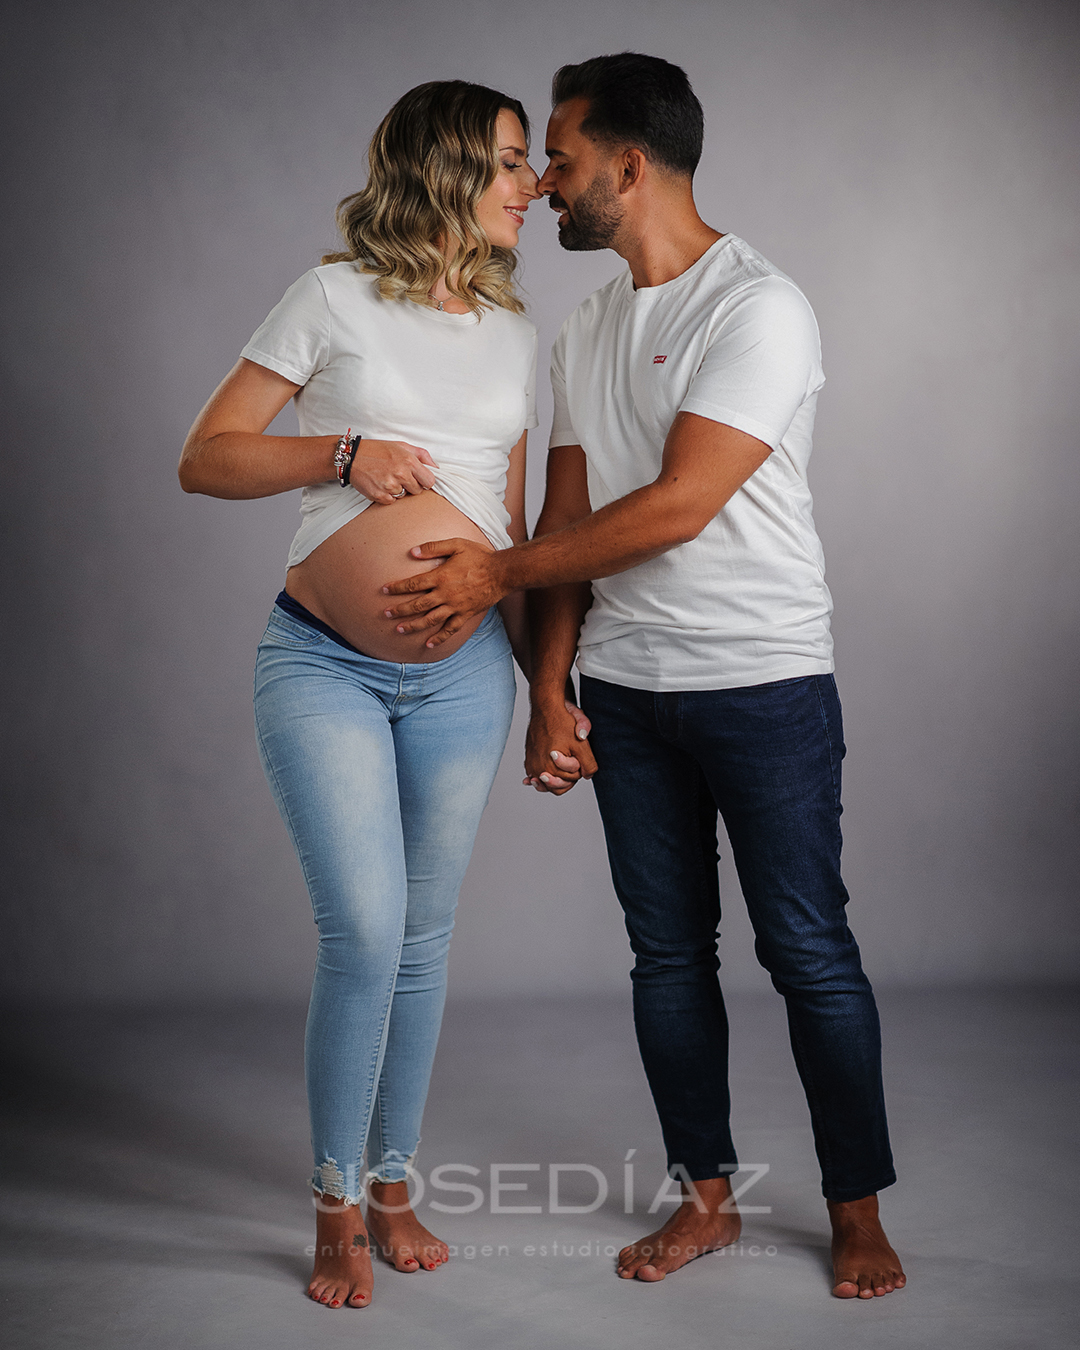 fotografia en pareja, embarazo, sesion de embarazo de pareja, fotografia de embarazo